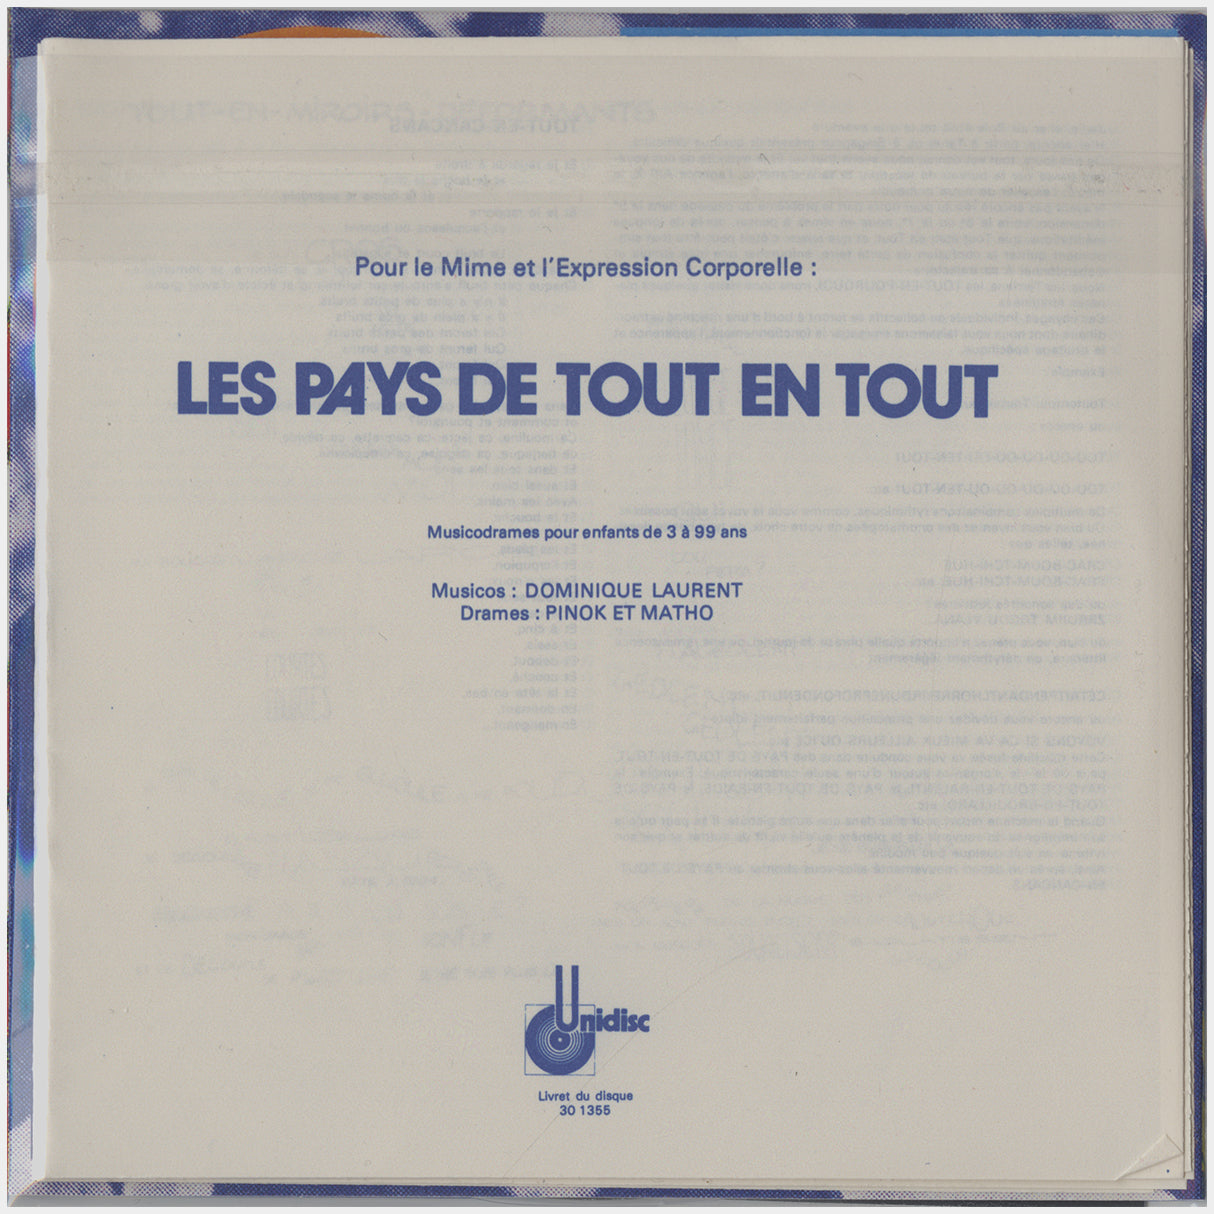 [CP 199.17 CD] Dominique Laurent; The Complete Pinok et Matho Soundtracks